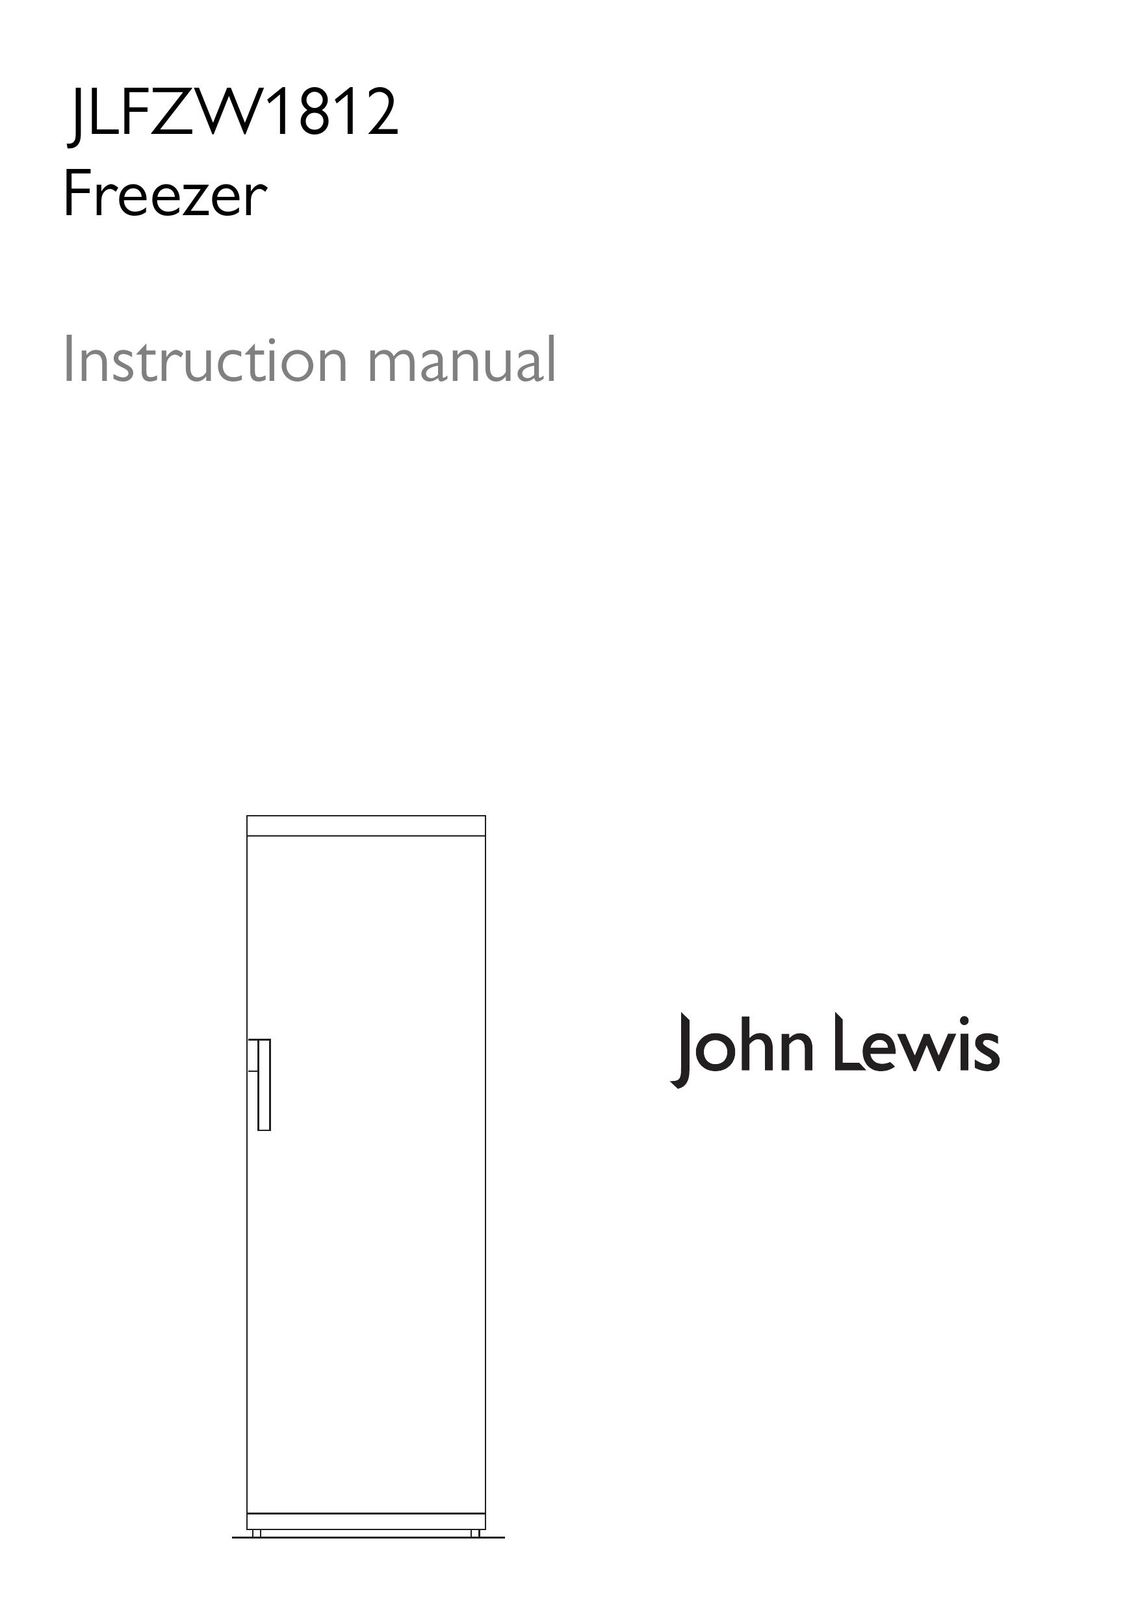 John Lewis JLFZW1812 Freezer User Manual